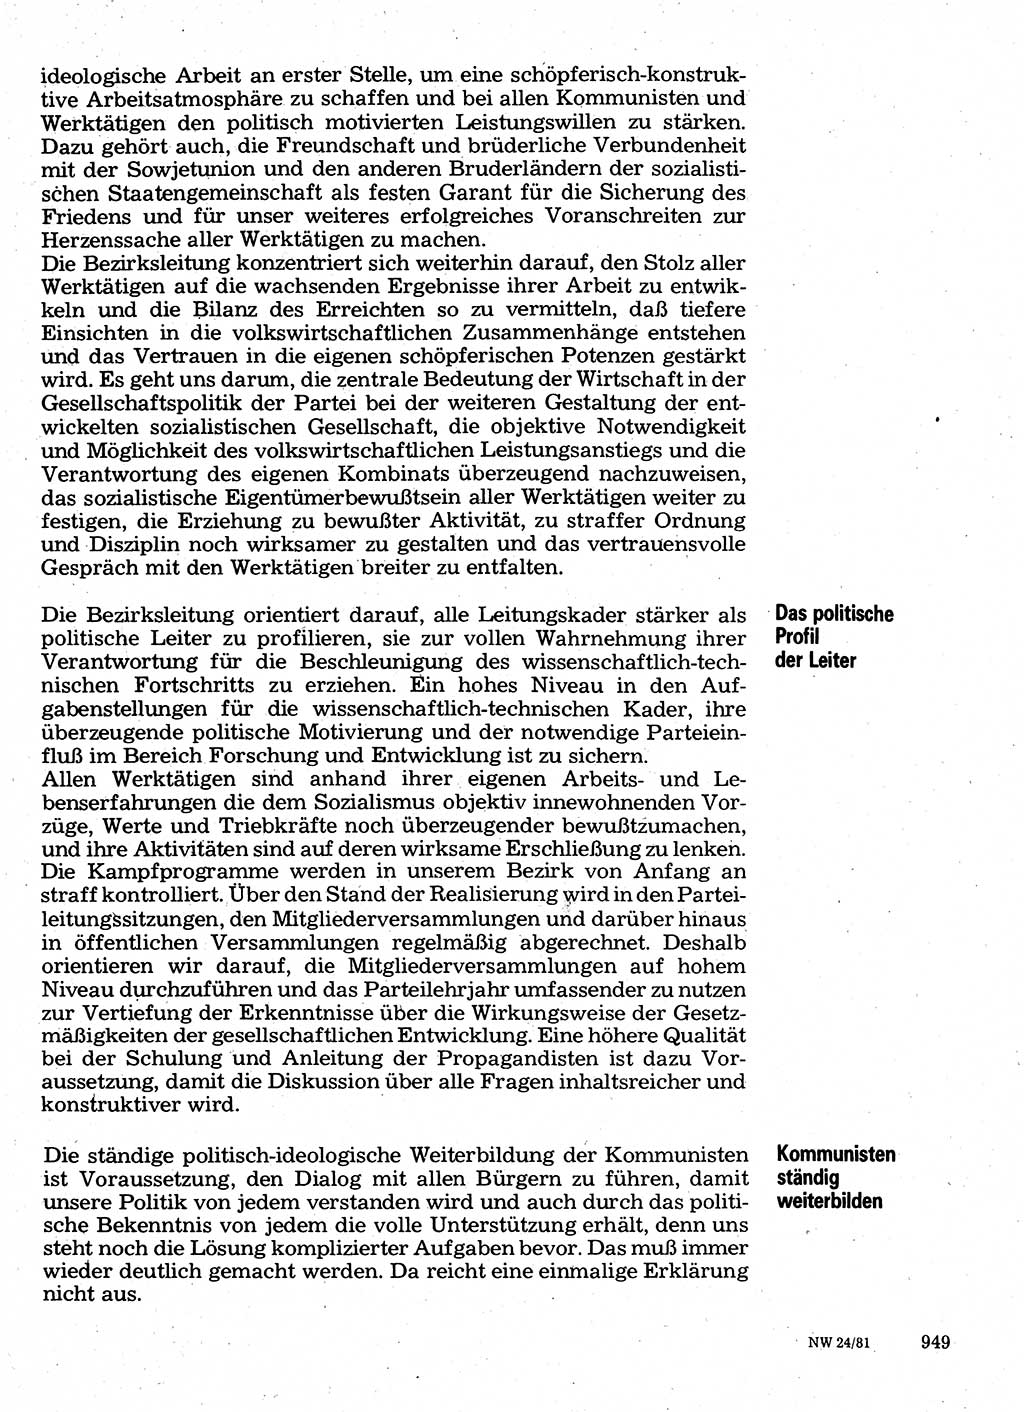 Neuer Weg (NW), Organ des Zentralkomitees (ZK) der SED (Sozialistische Einheitspartei Deutschlands) für Fragen des Parteilebens, 36. Jahrgang [Deutsche Demokratische Republik (DDR)] 1981, Seite 949 (NW ZK SED DDR 1981, S. 949)